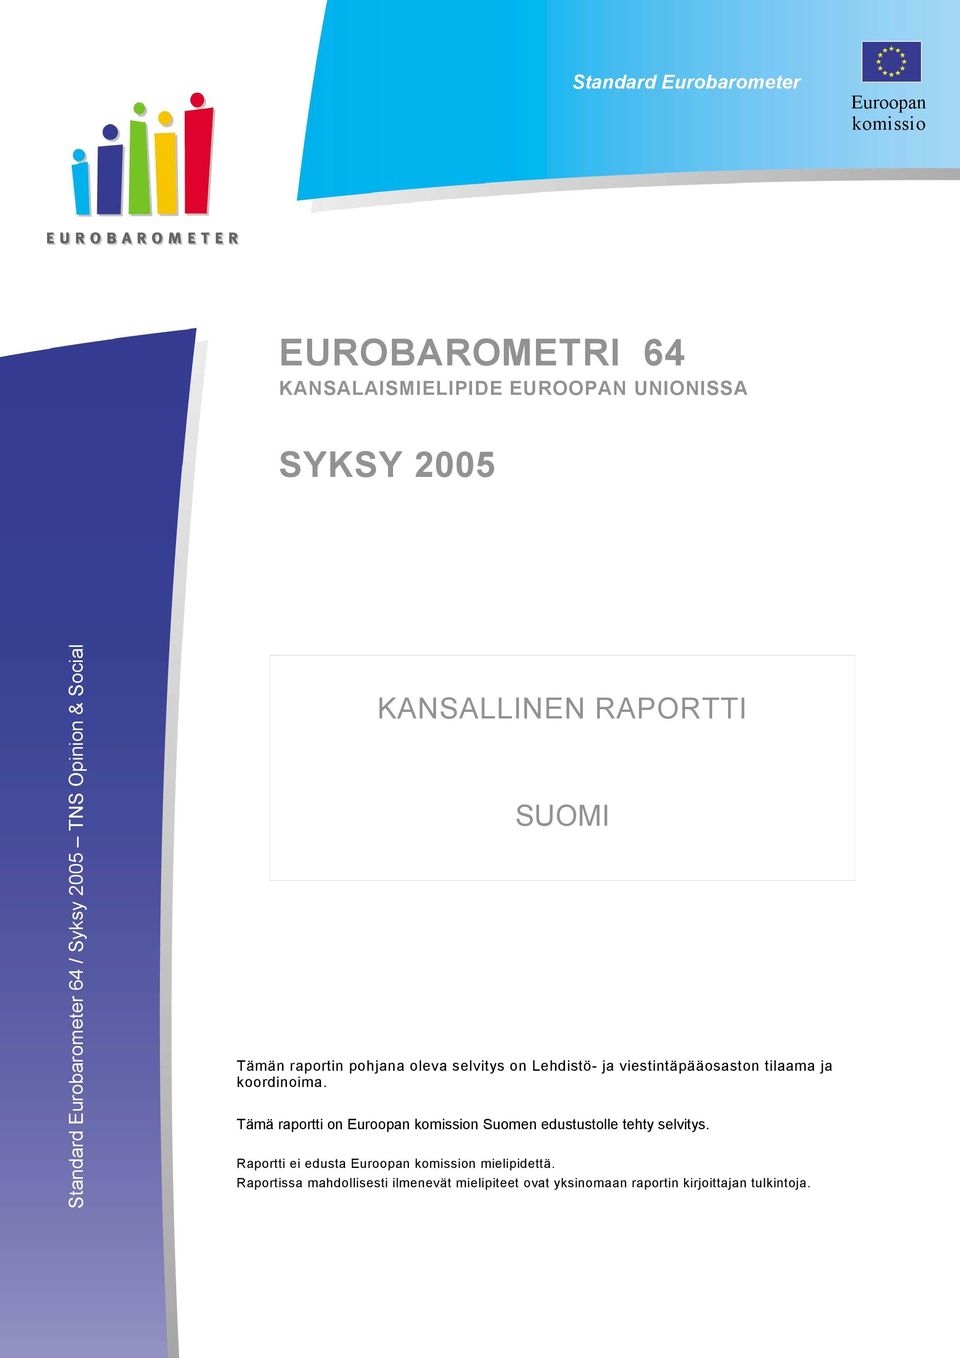 Lehdistö- ja viestintäpääosaston tilaama ja koordinoima. Tämä raportti on Euroopan komission Suomen edustustolle tehty selvitys.